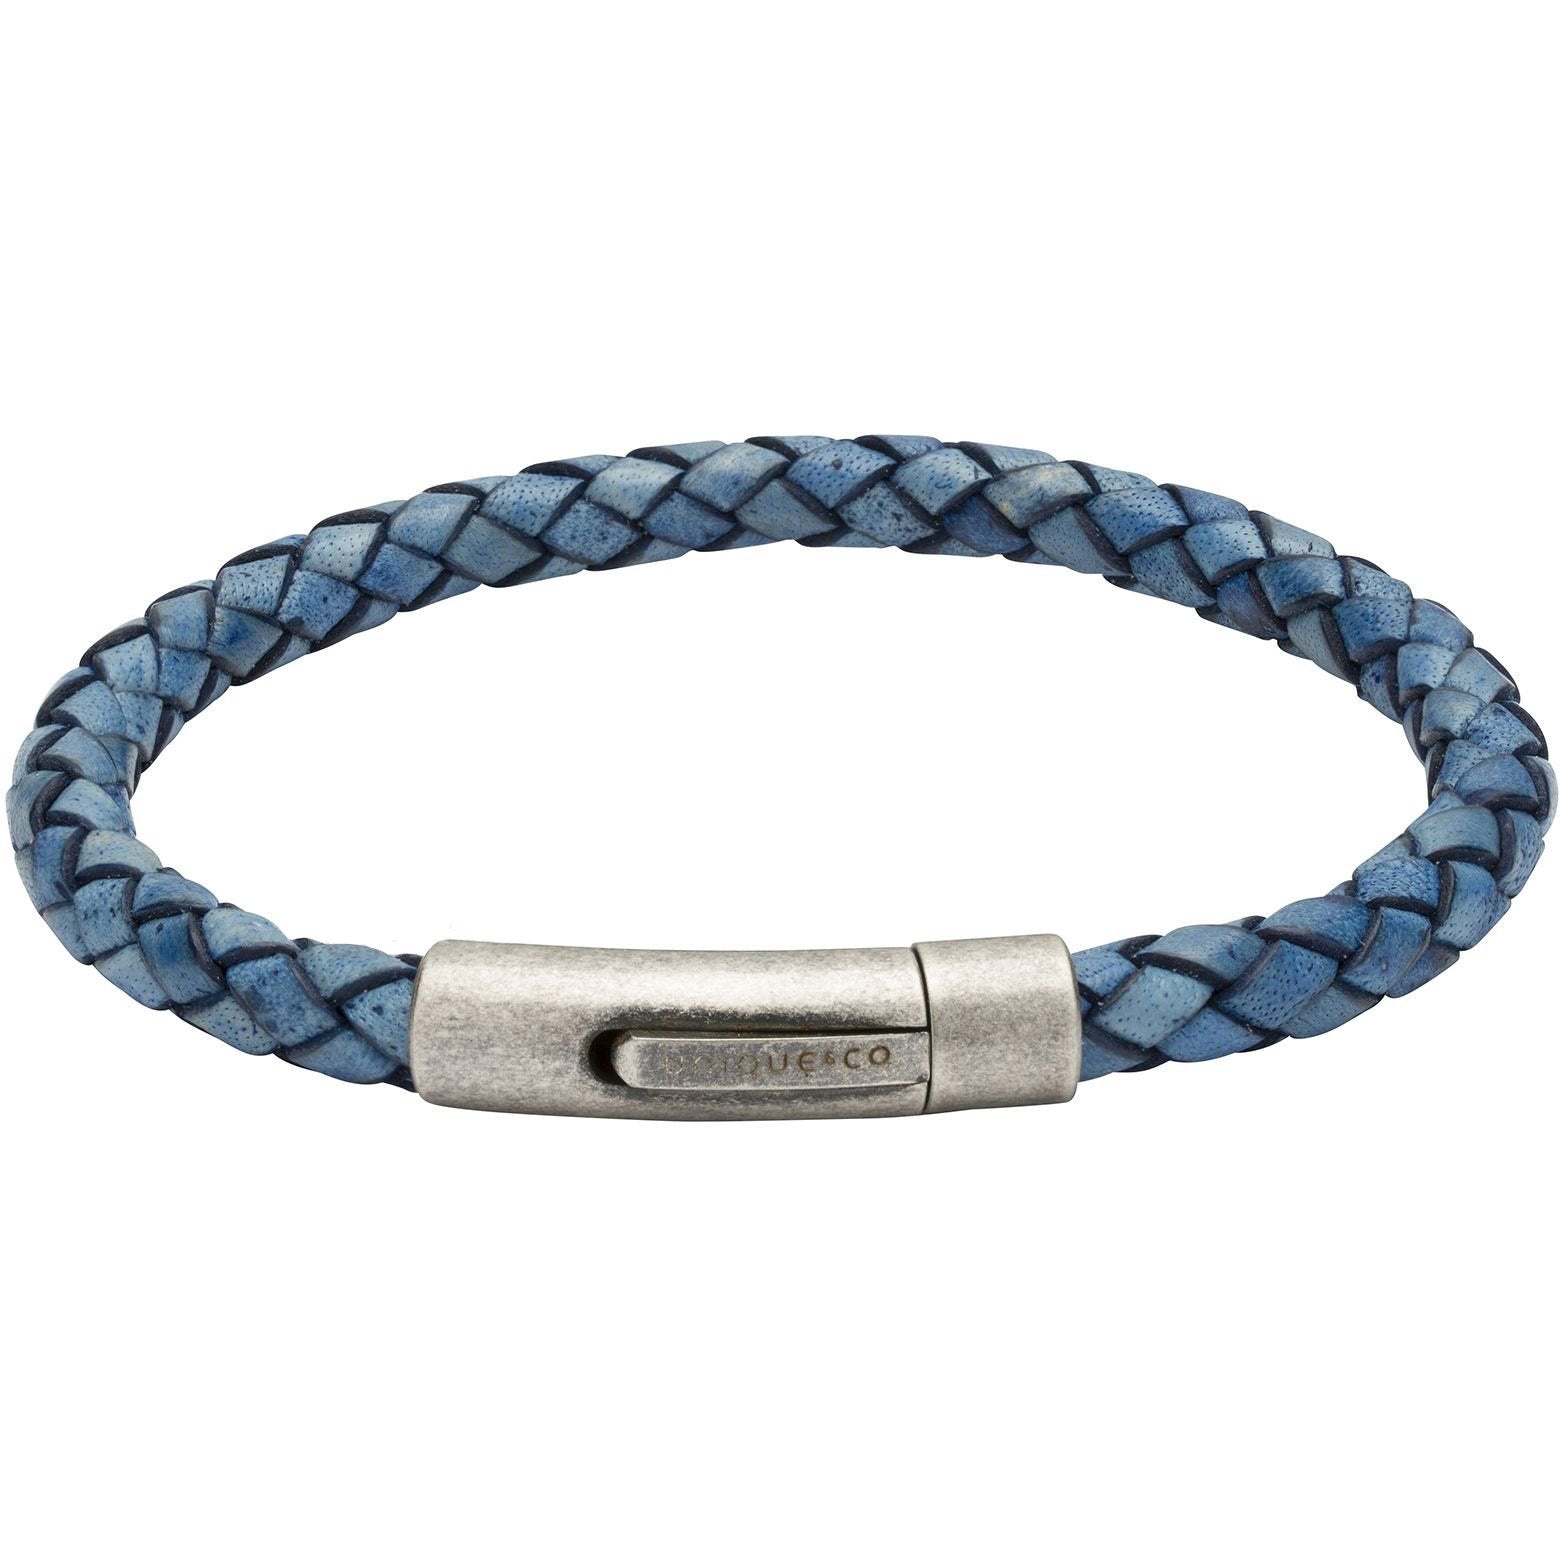 Antique steel & antique blue plaited bracelet Bracelet Rock Lobster   